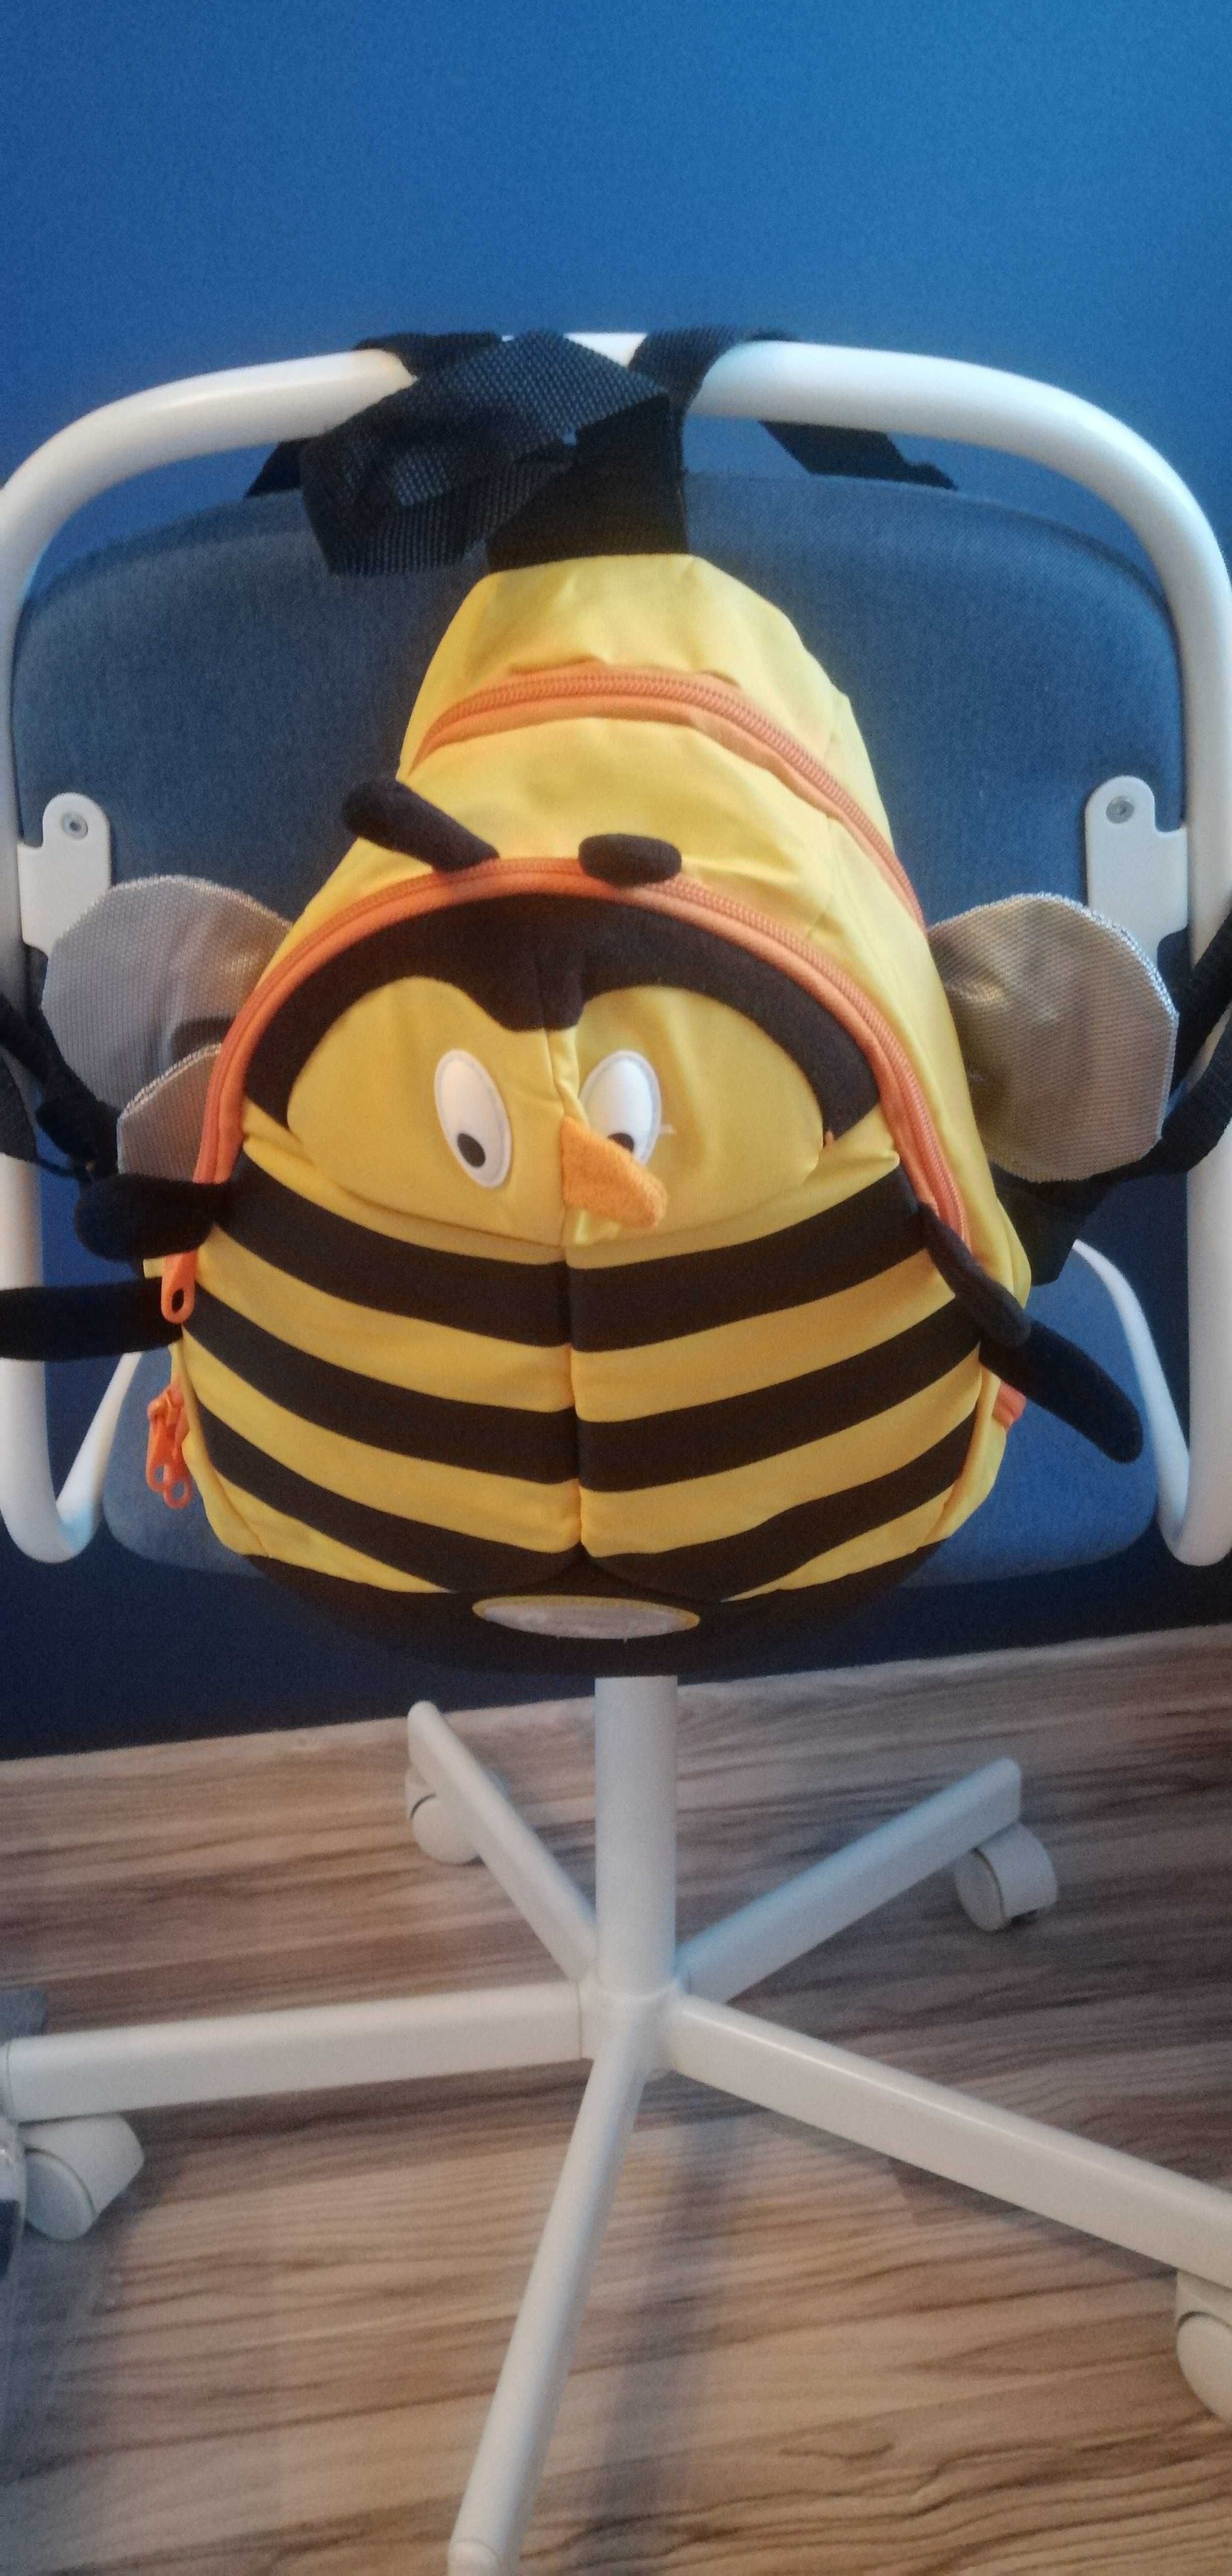 Plecak Samsonite pszczółka